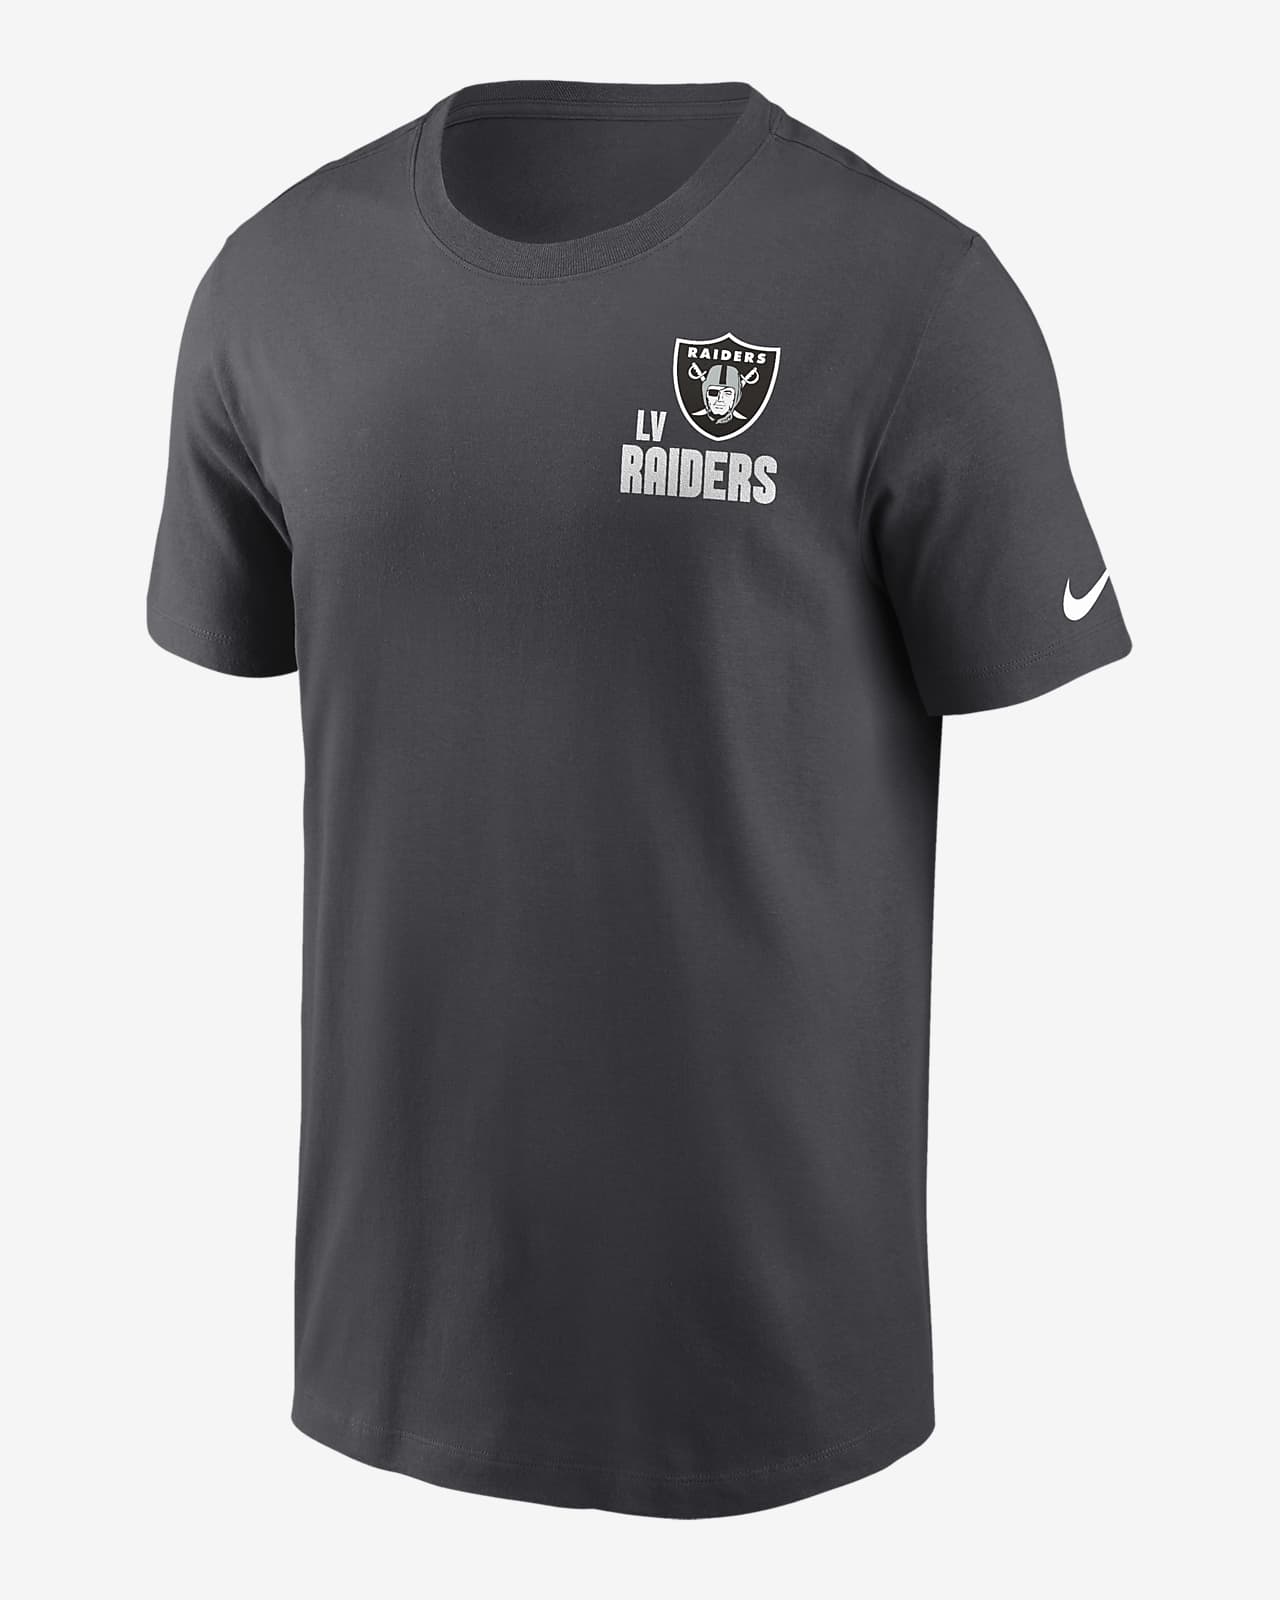 Las Vegas Raiders Blitz Team Essential Men's Nike NFL T-Shirt